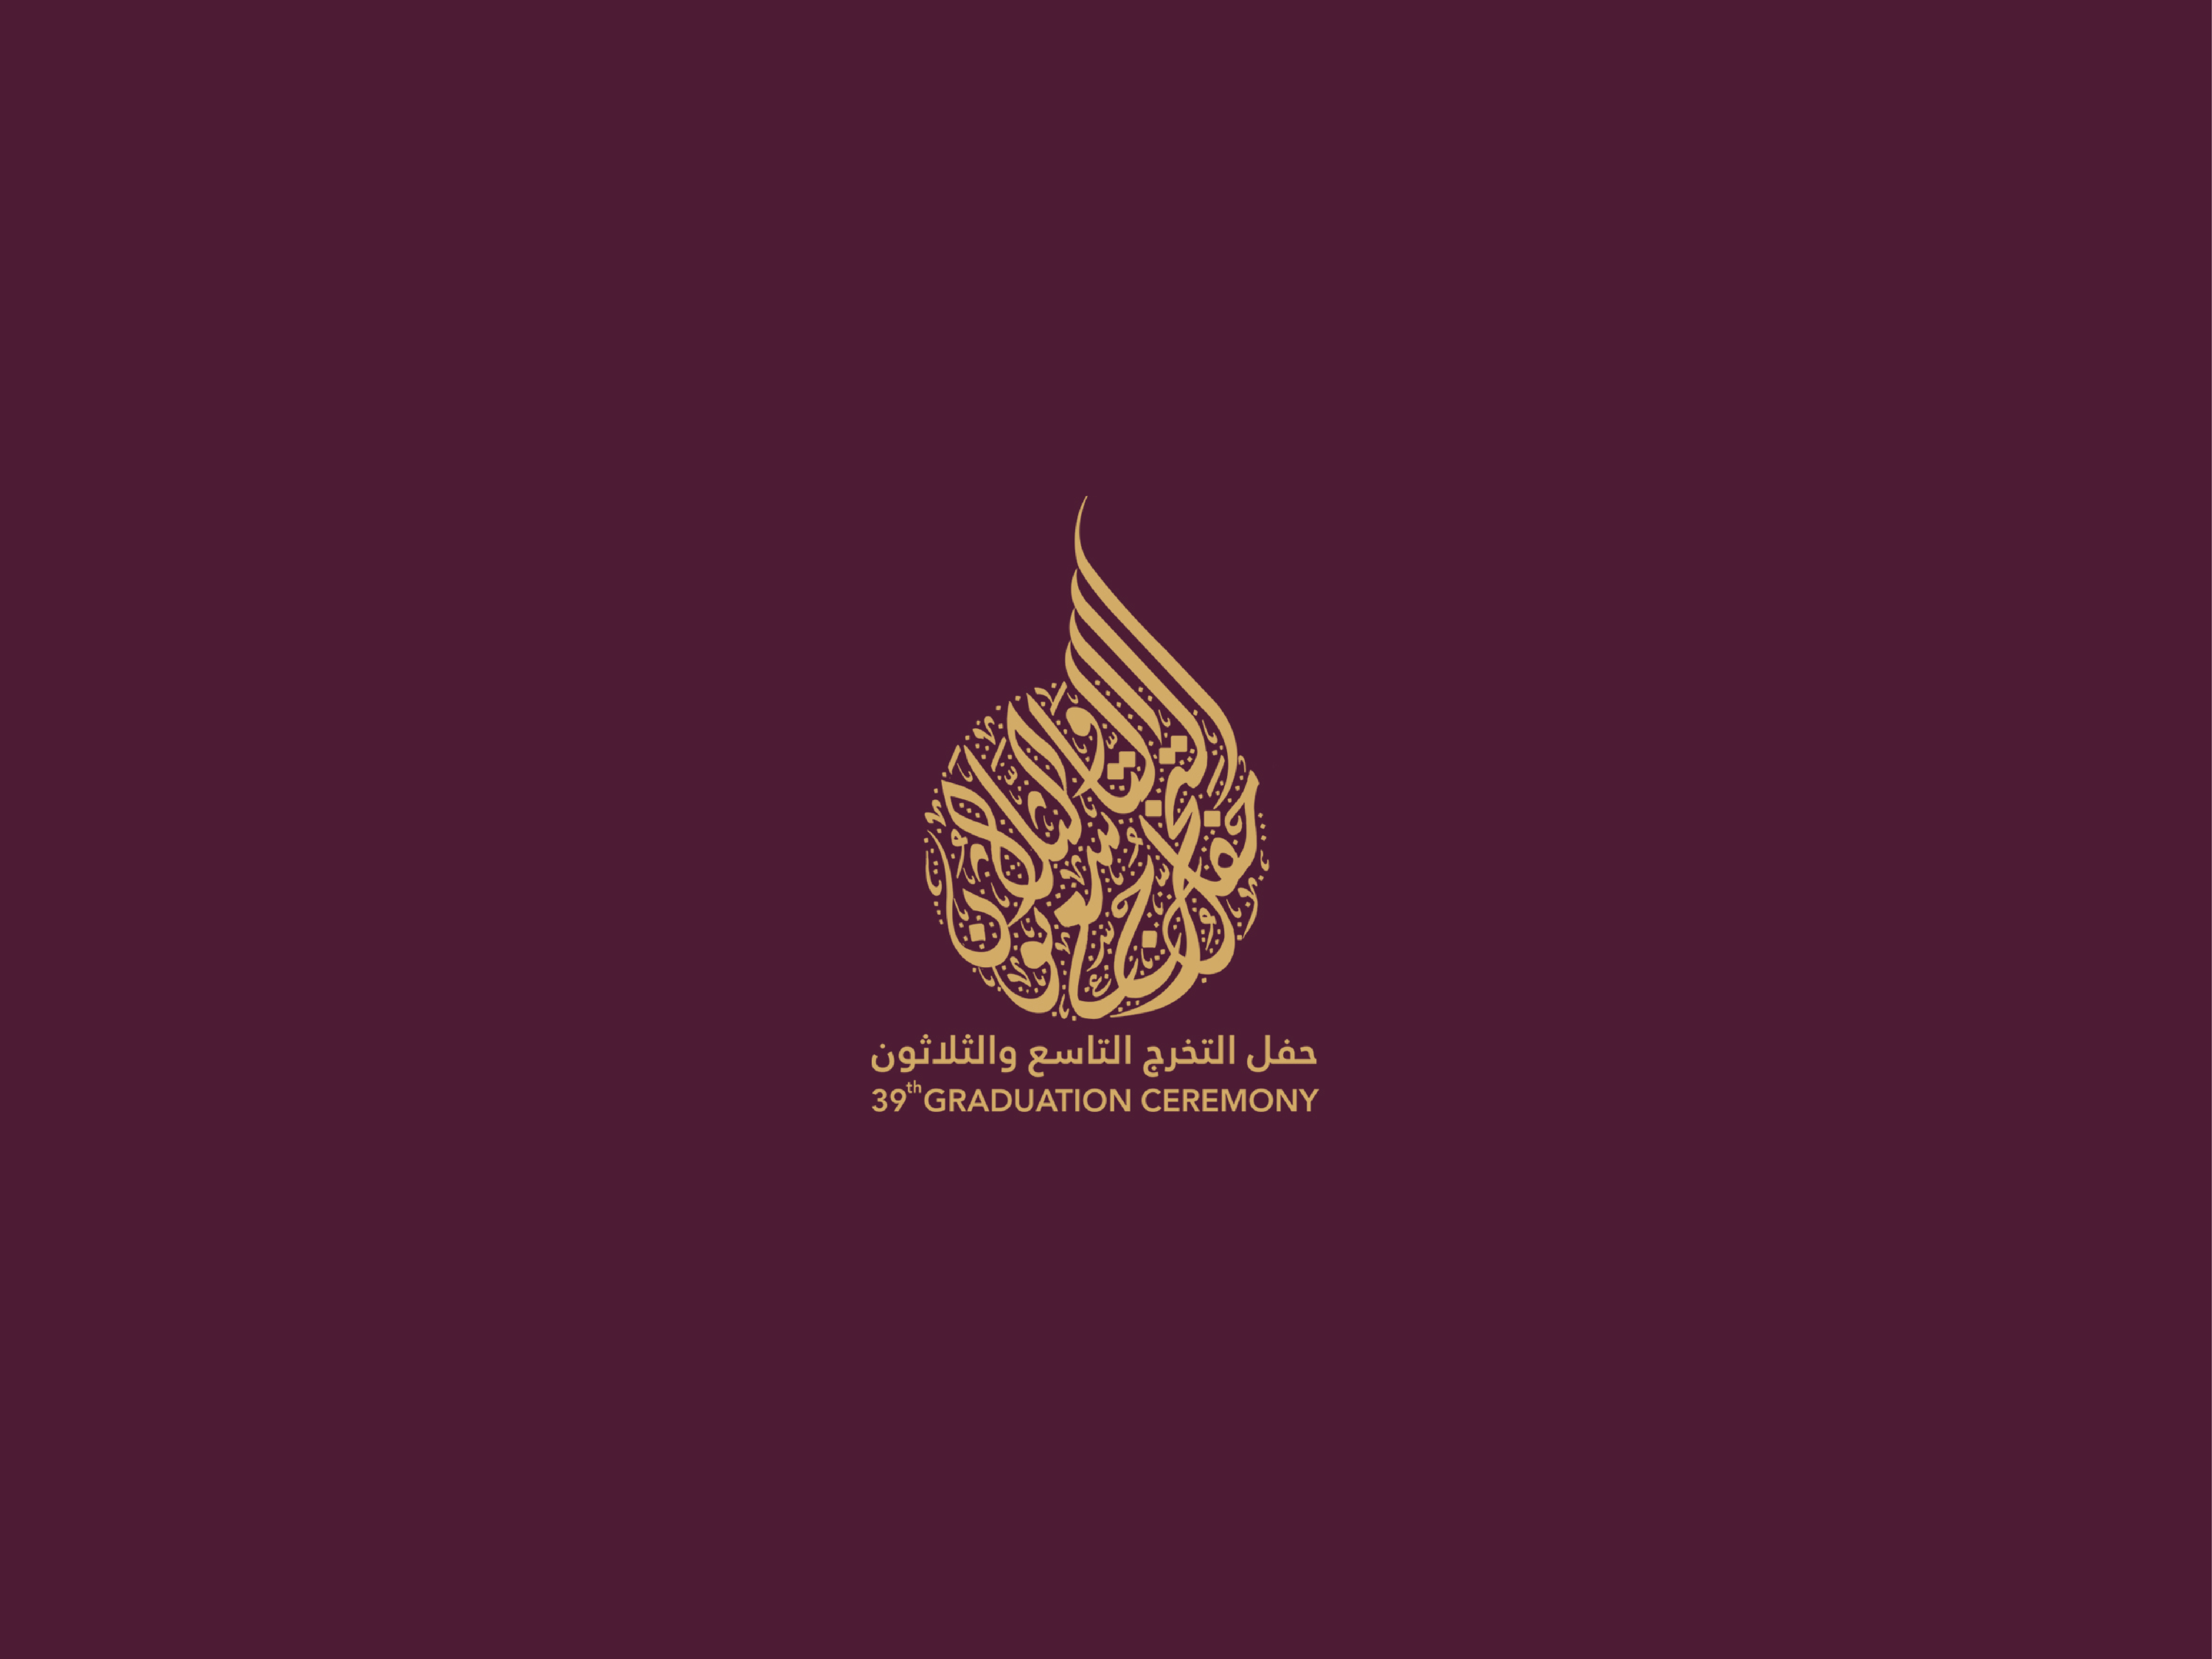 حفل تخرج الطالبات 2018 Imam Abdulrahman Bin Faisal University